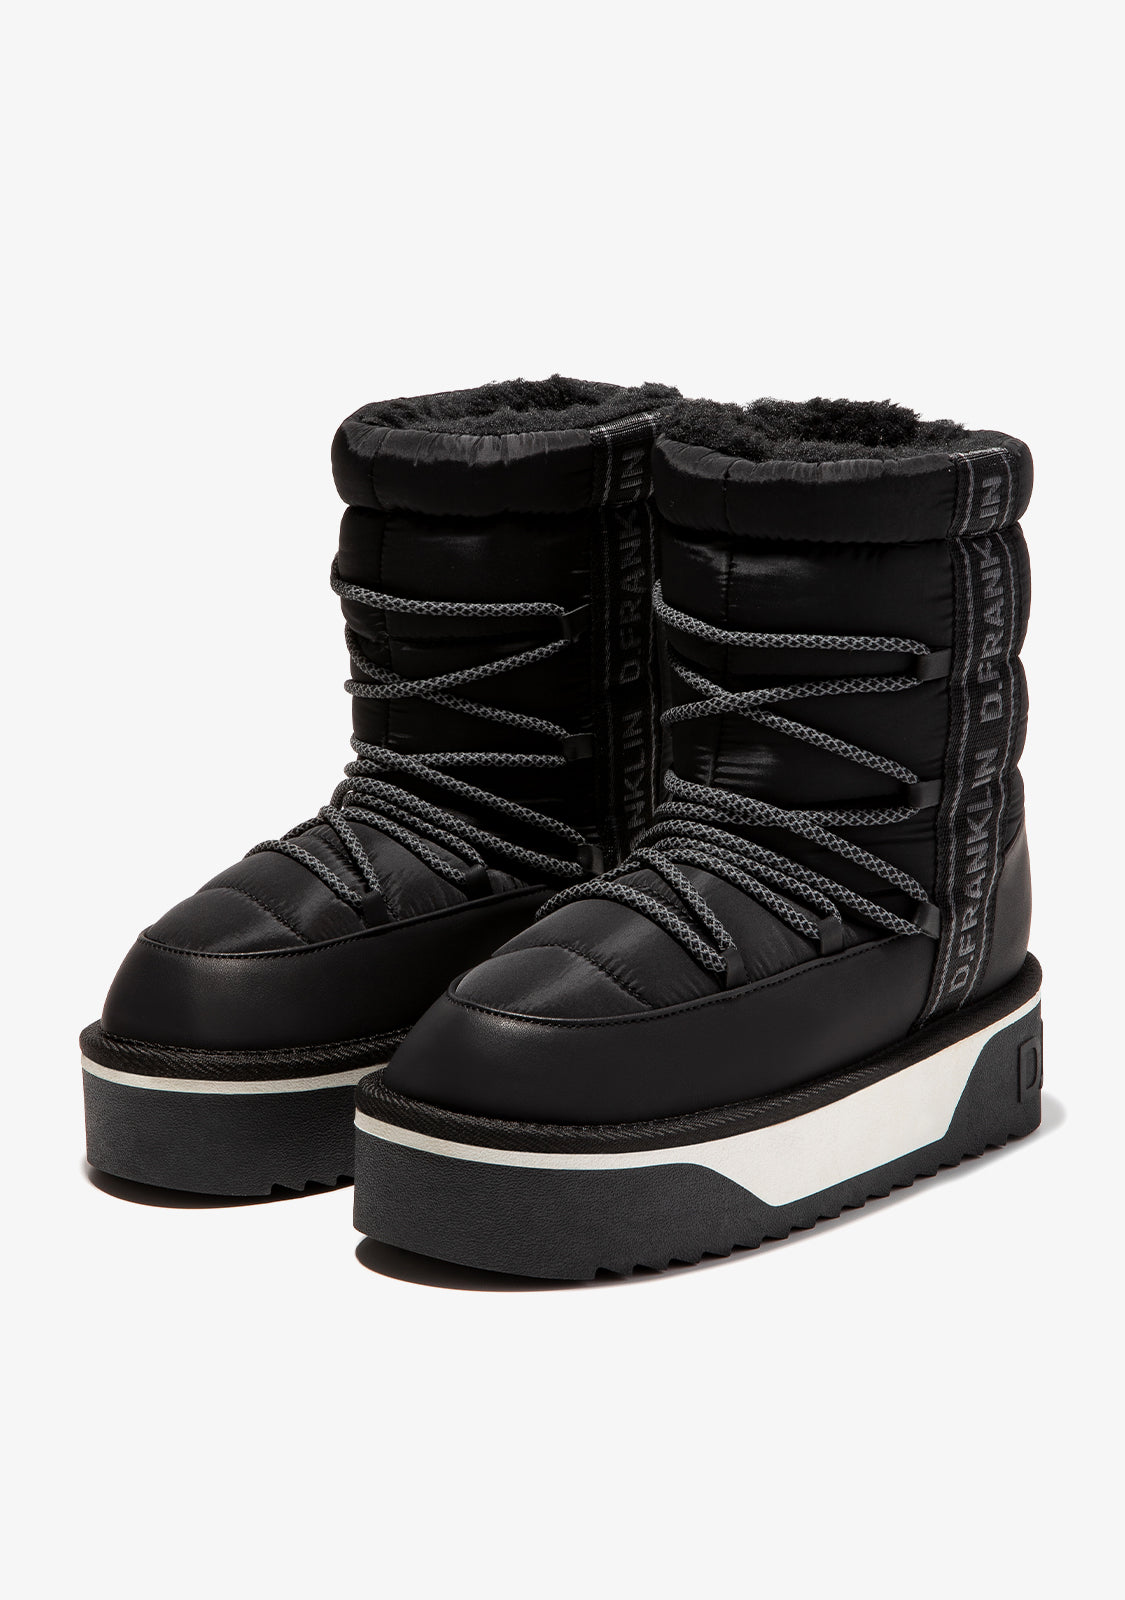 D.Franklin Winter boots - black - Zalando.de